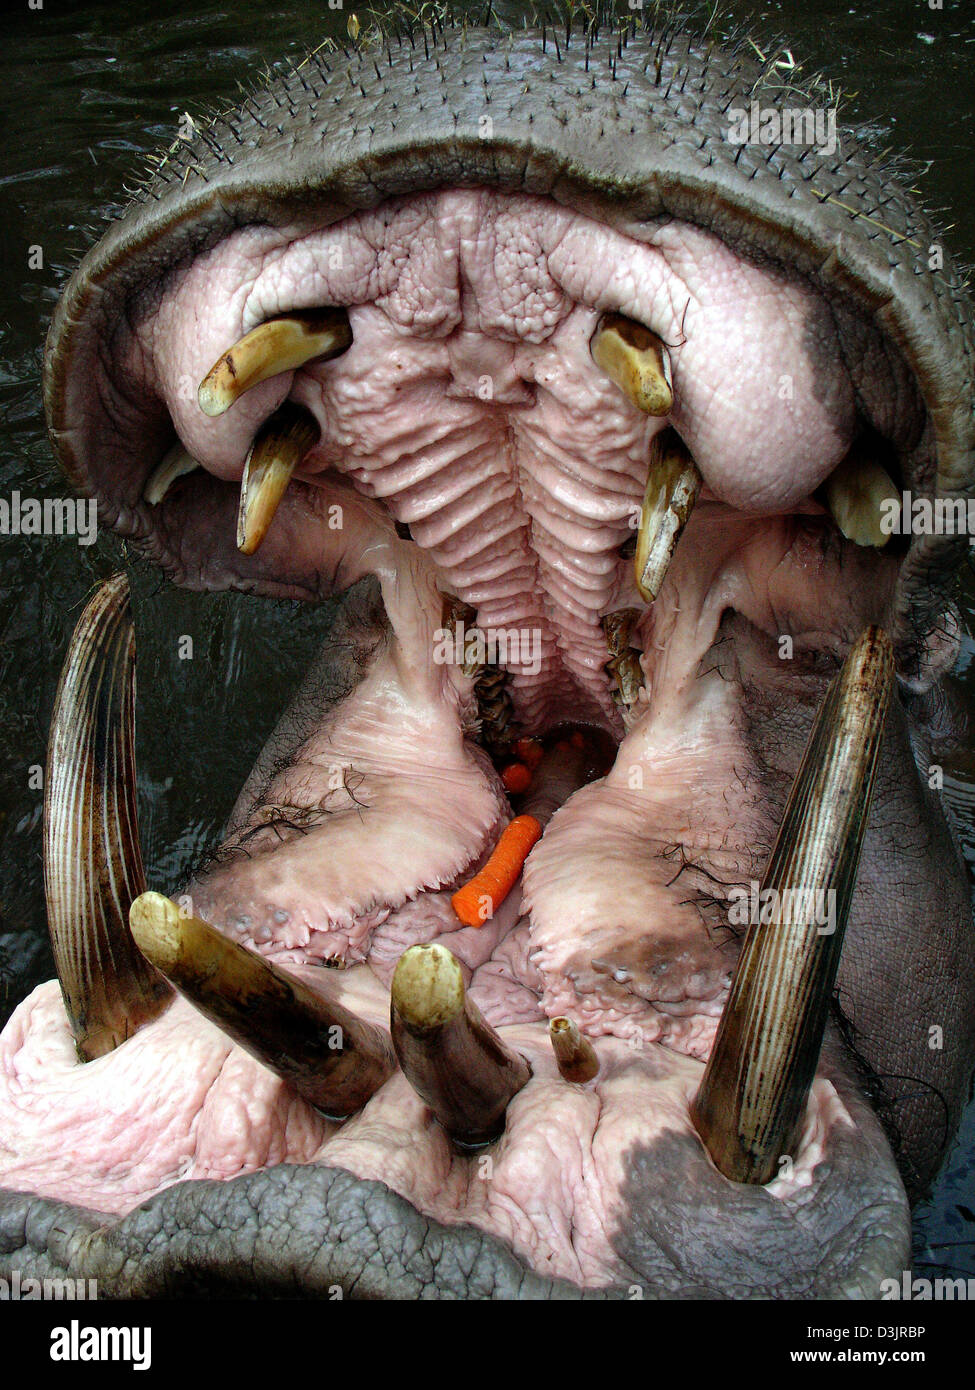 Dpa) - ein Nilpferd öffnet seinen Mund von den Besuchern im Opel Zoo in  Kronberg, Deutschland, 23. Januar 2005 gefüttert werden. Die Karotten in  seinem Maul zeigen, dass seinen Plan erfolgreich war Stockfotografie - Alamy